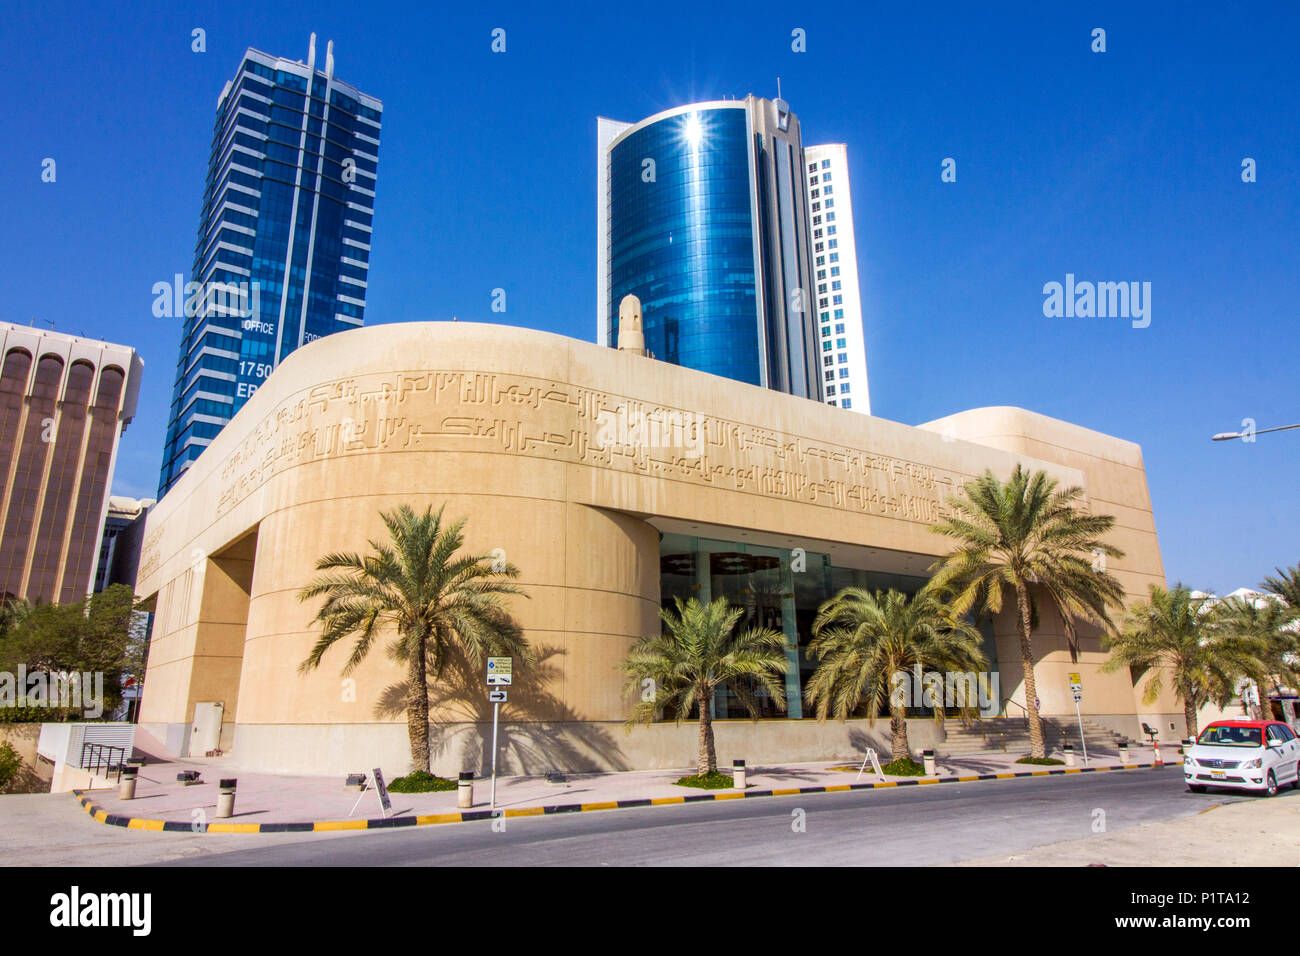 Beit Al Qur'an est un musée des arts de l'Islam et du Coran situé dans la ville de Manama, Bahreïn Banque D'Images